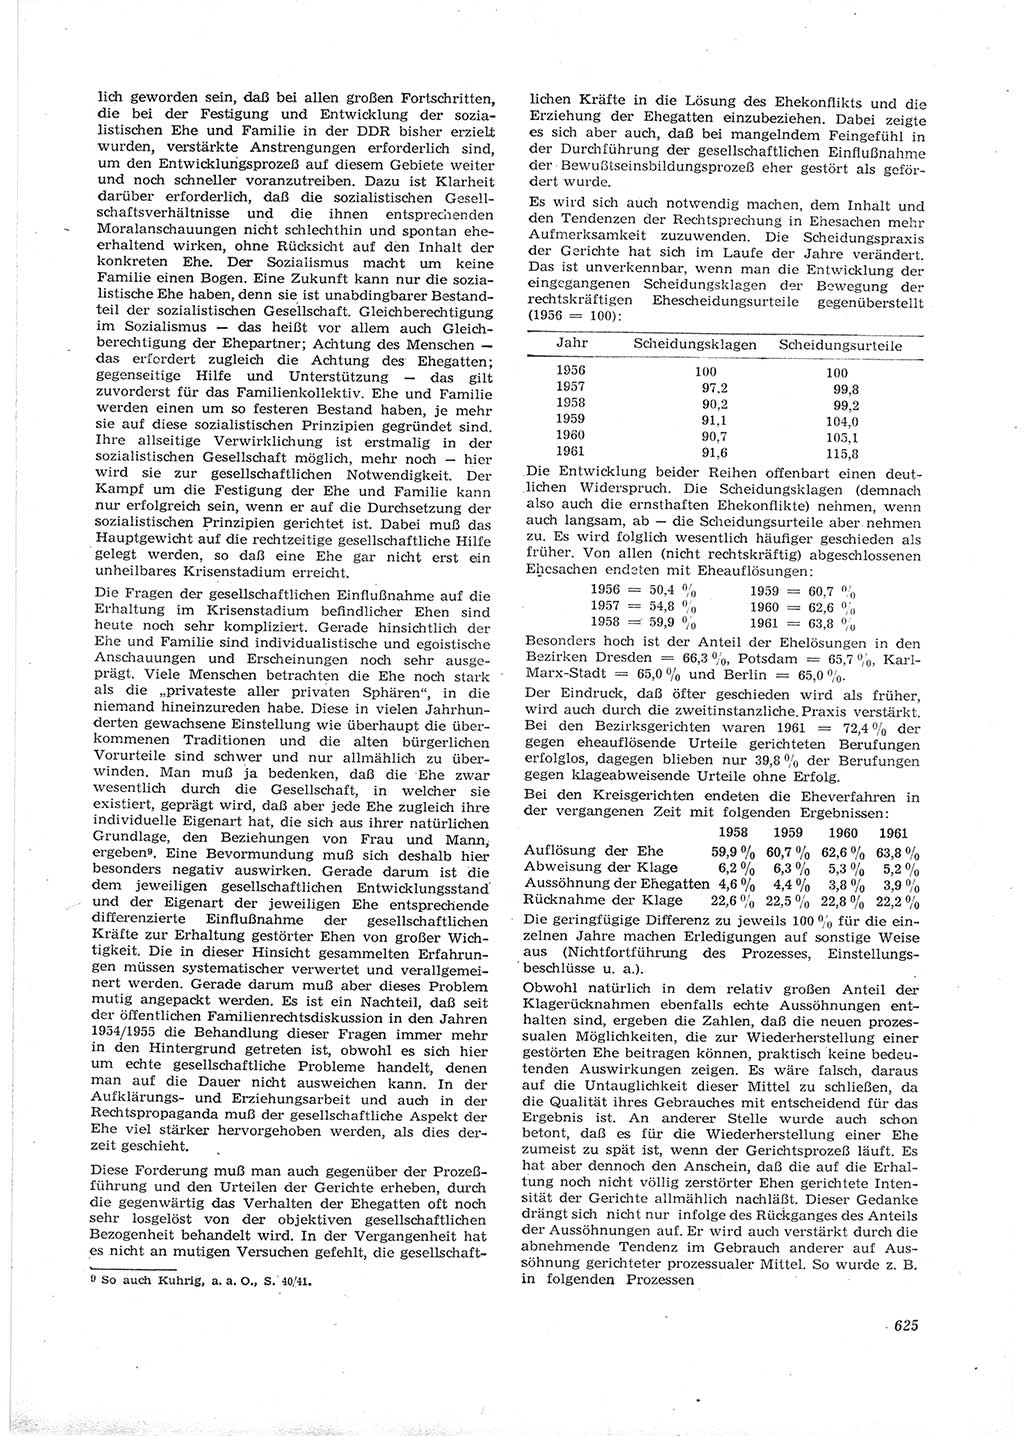 Neue Justiz (NJ), Zeitschrift für Recht und Rechtswissenschaft [Deutsche Demokratische Republik (DDR)], 16. Jahrgang 1962, Seite 625 (NJ DDR 1962, S. 625)